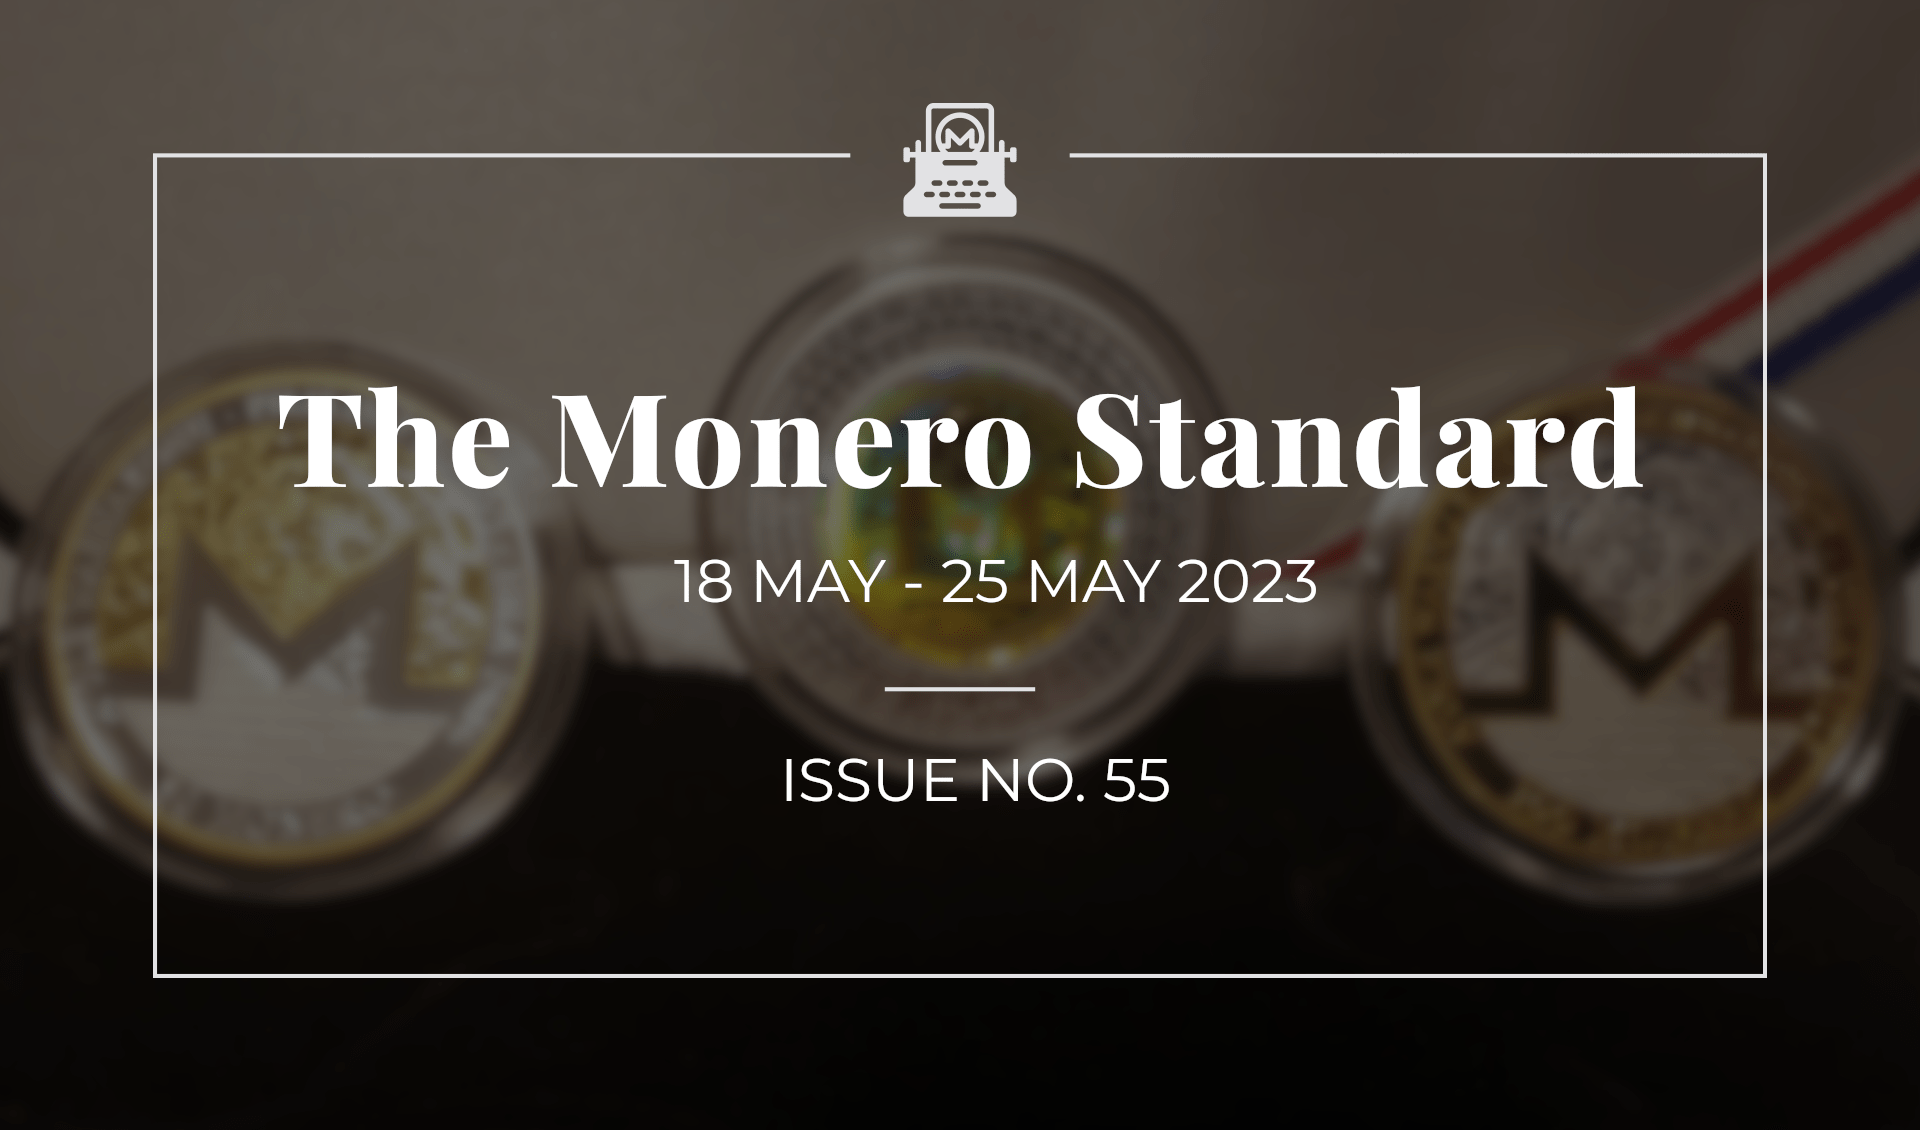 The Monero Standard #55: 18 May 2023 - 25 May 2023